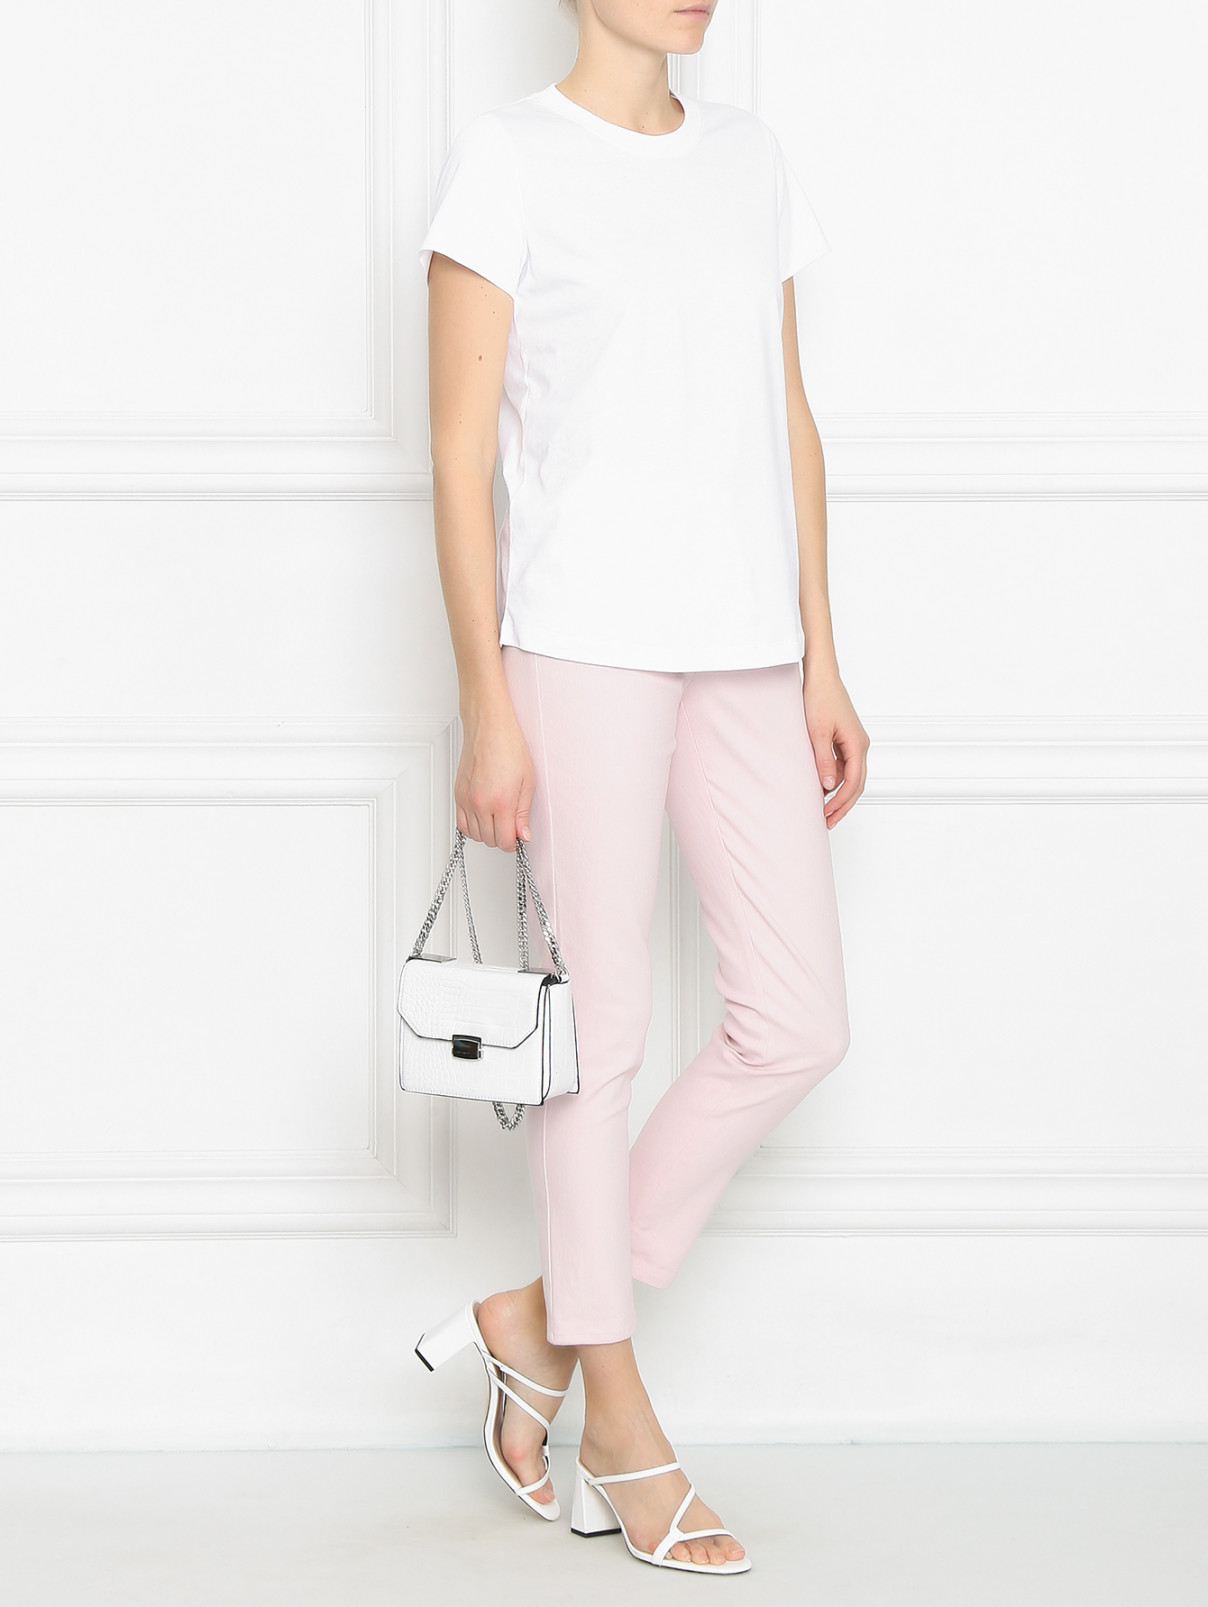 Зауженные джинсы с металлической фурнитурой Max Mara  –  Модель Общий вид  – Цвет:  Розовый